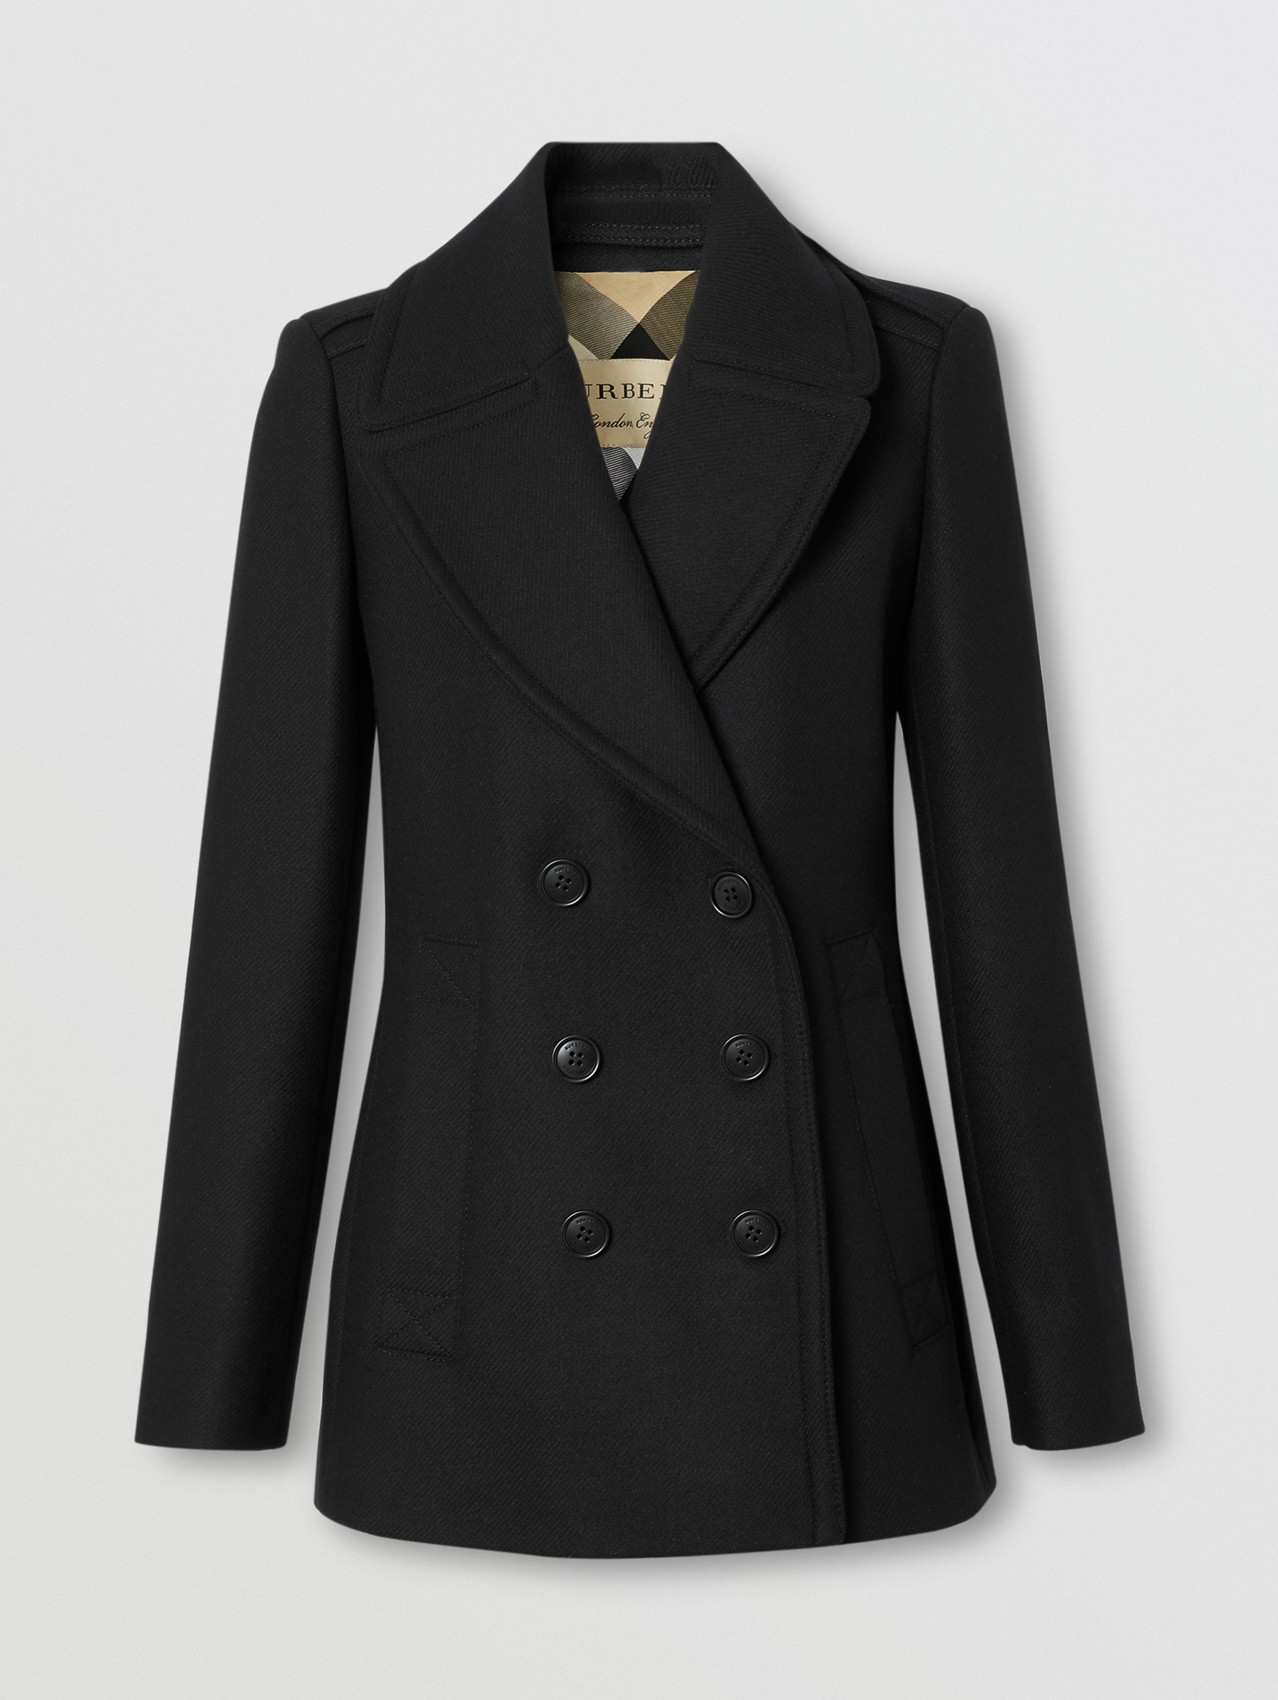 Women’s Coats | Pea Coats, Duffle Coats, Parkas & more | Burberry